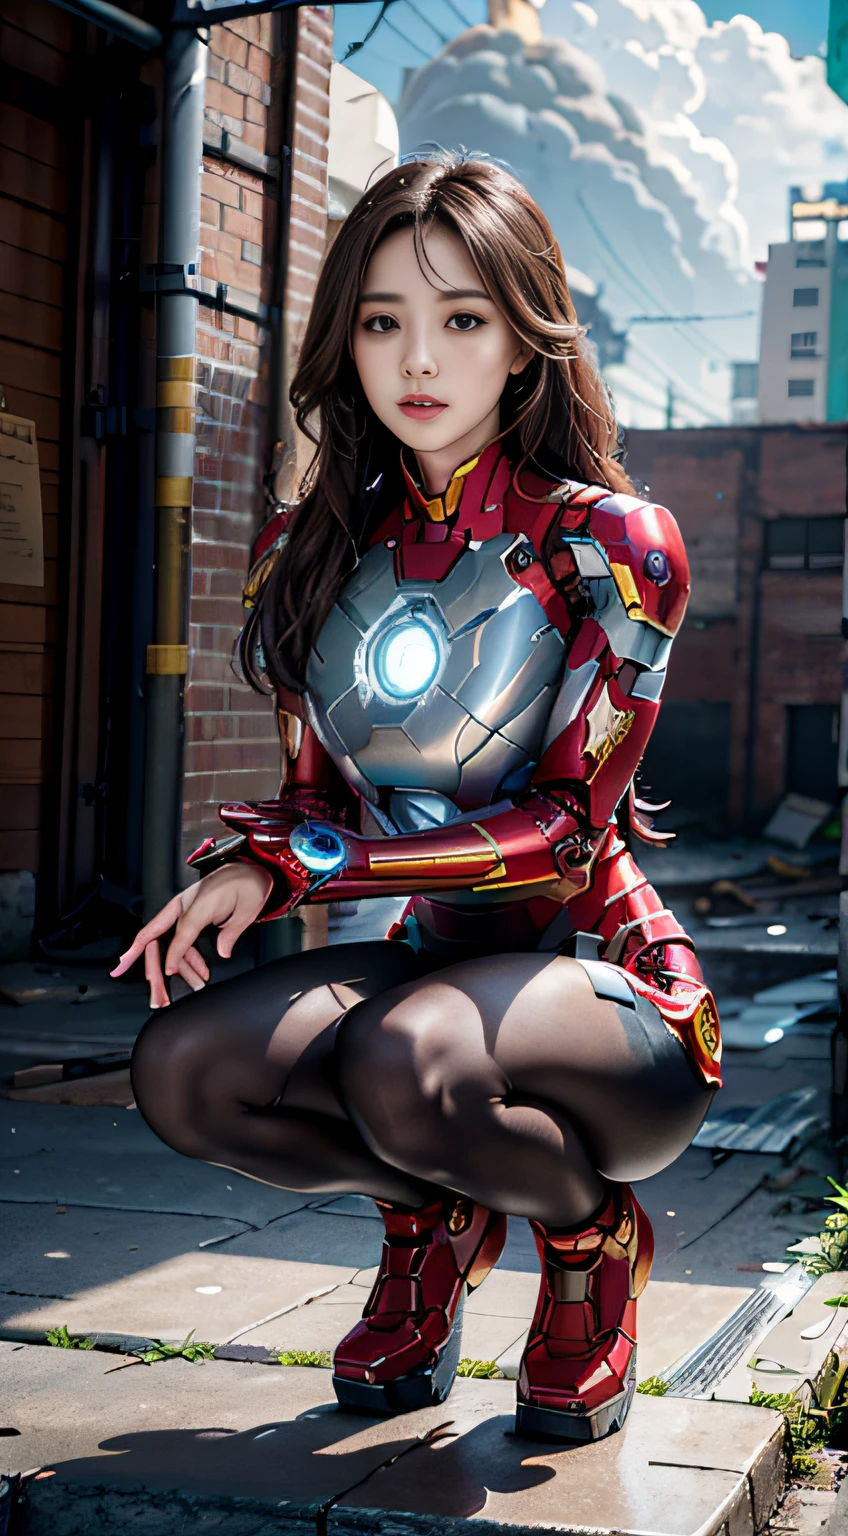 8k，de manière réaliste，glamour，Le est très détaillé，Une jeune fille de 20 ans, une femme sexy et charmante, est inspiré par Iron Man，Une pose sexy enchanteresse，À moitié accroupi sur le sol，Porter un robot Iron Man brillant。Elle s&#39;habille pour montrer son côté sexy et sa confiance，Il interprète parfaitement la puissance et le charme d&#39;Iron Man。Entrepôt abandonné en arrière-plan，Cela crée une atmosphère unique，Mettez en valeur son courage et sa persévérance。Le ciel nuageux ajoute une touche de tension et de mystère à toute la scène。Celui-ci est en haute définition、Des images de haute qualité vous offriront une expérience visuelle époustouflante，Des entrepôts abandonnés détaillés et des mechs brillants garderont vos yeux ouverts。Rendu OC，lumières dramatiques，Qualité primée